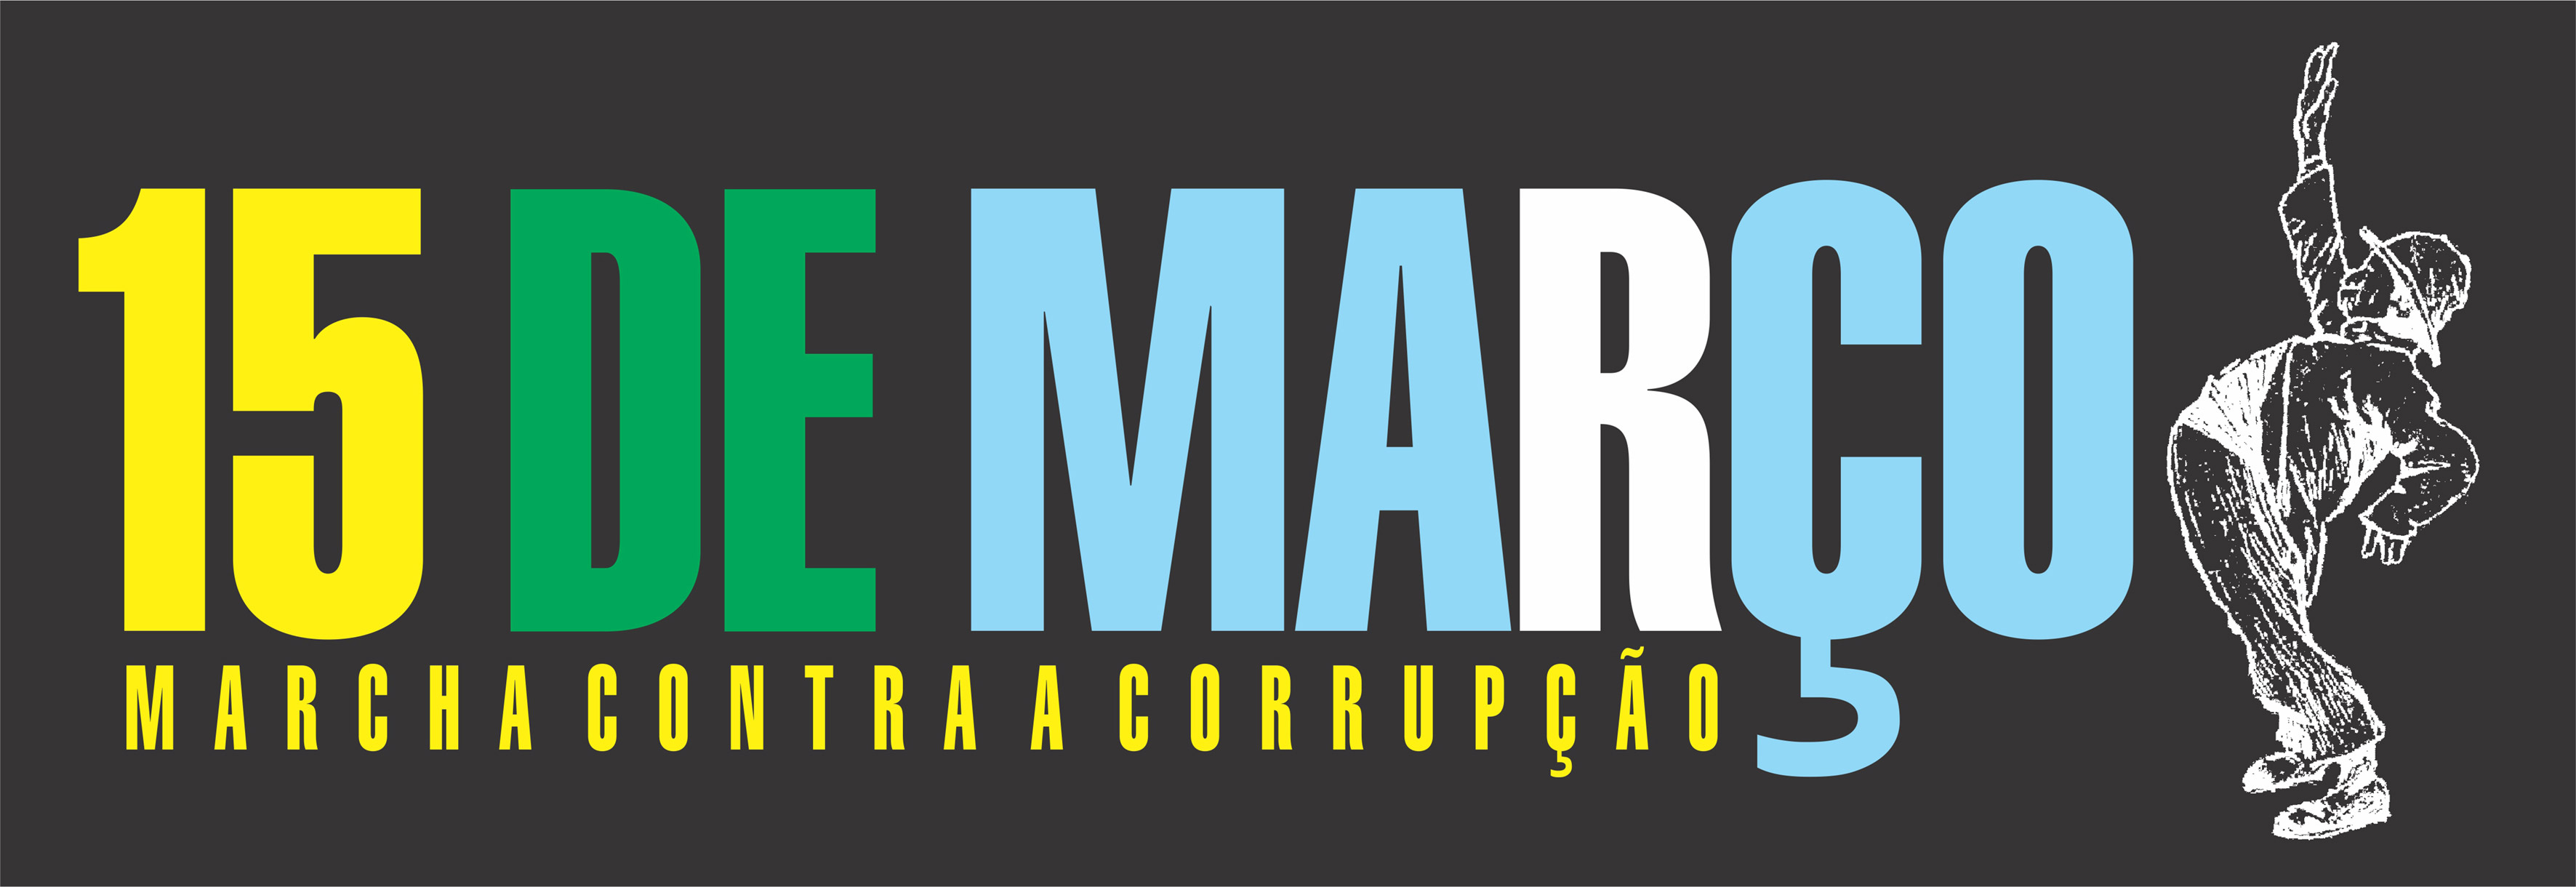 vaz-marcha-contra-a-corrupção-2